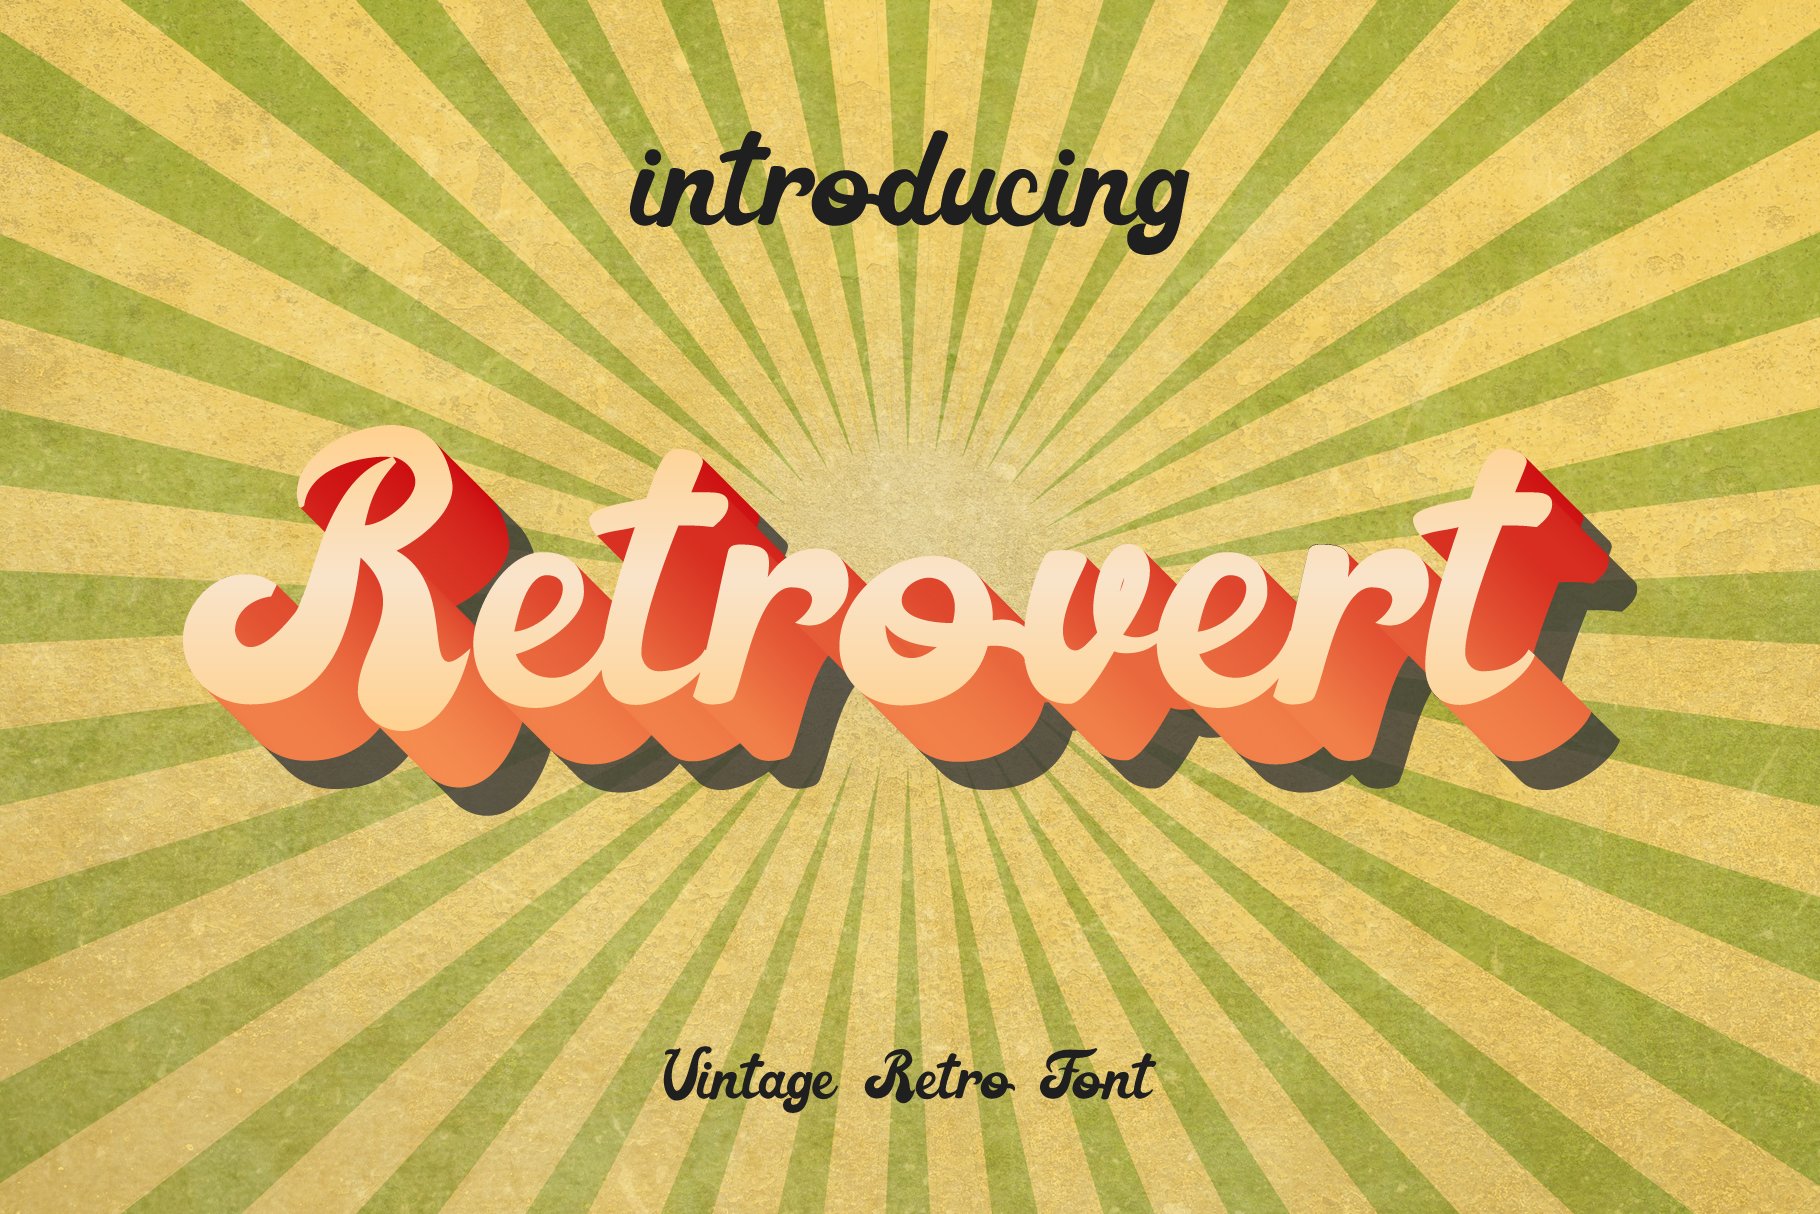 Retrovert Vintage Groovy + Bonus cover image.